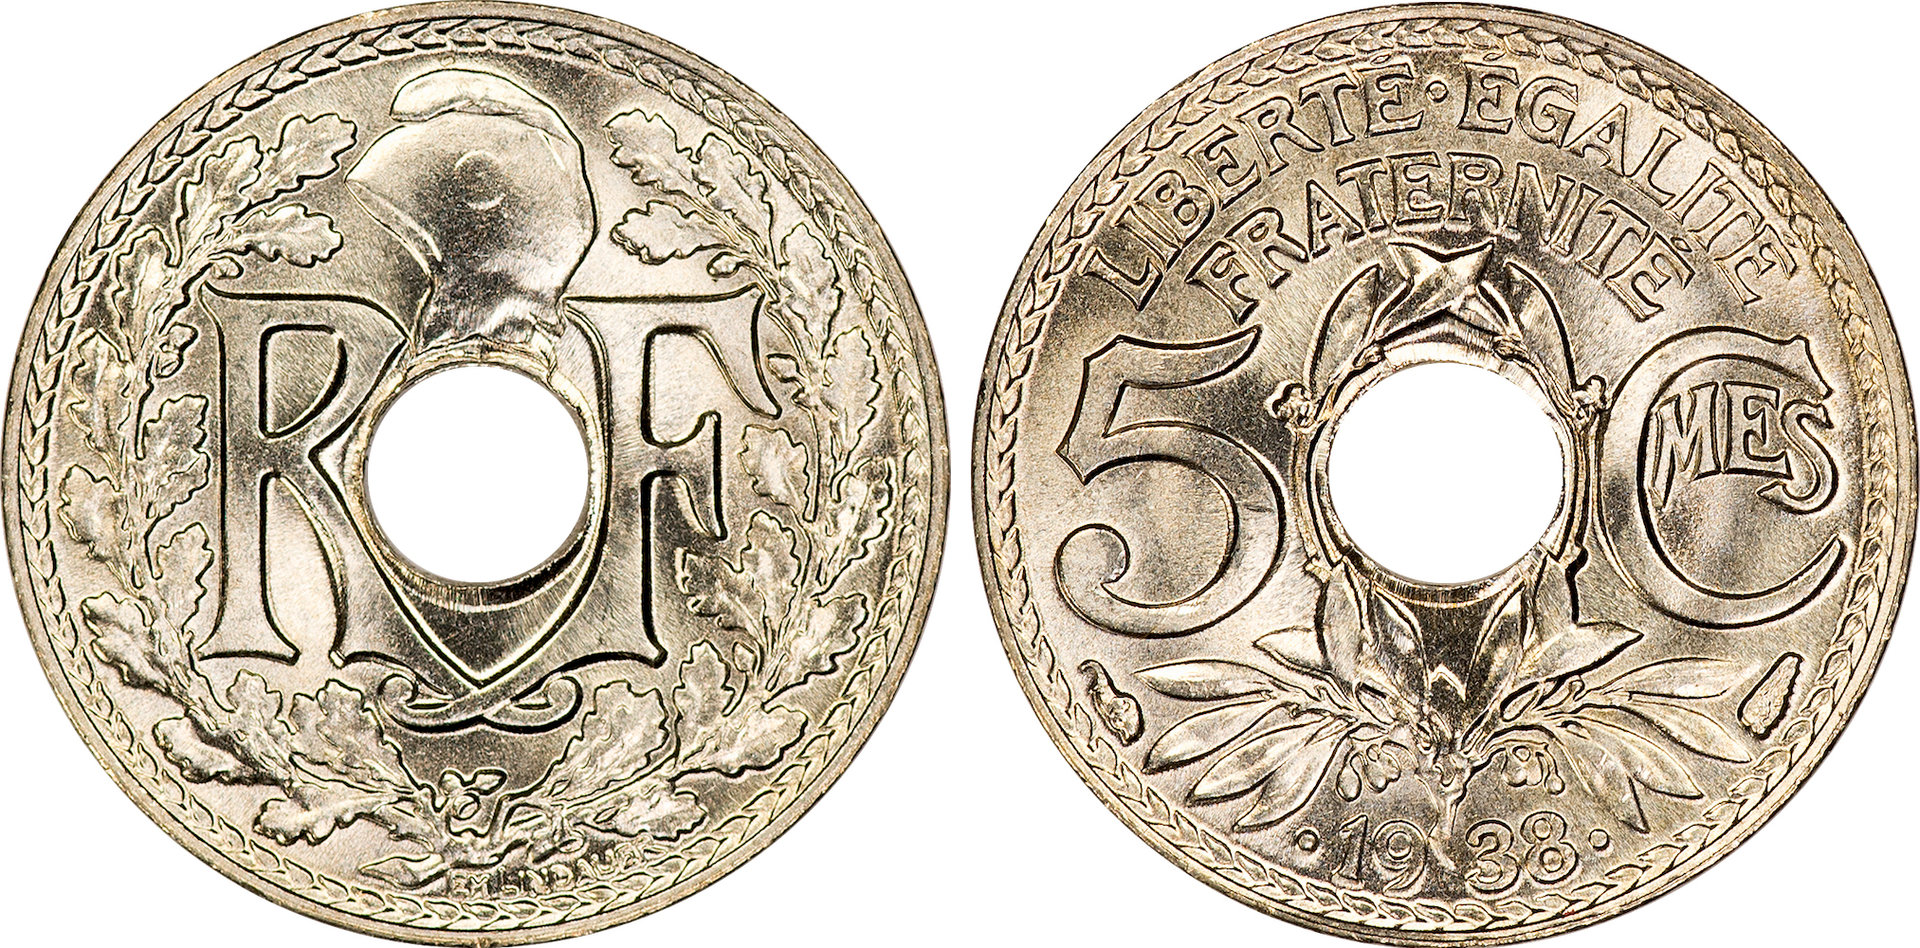 France - 1938 5 Centimes.jpg